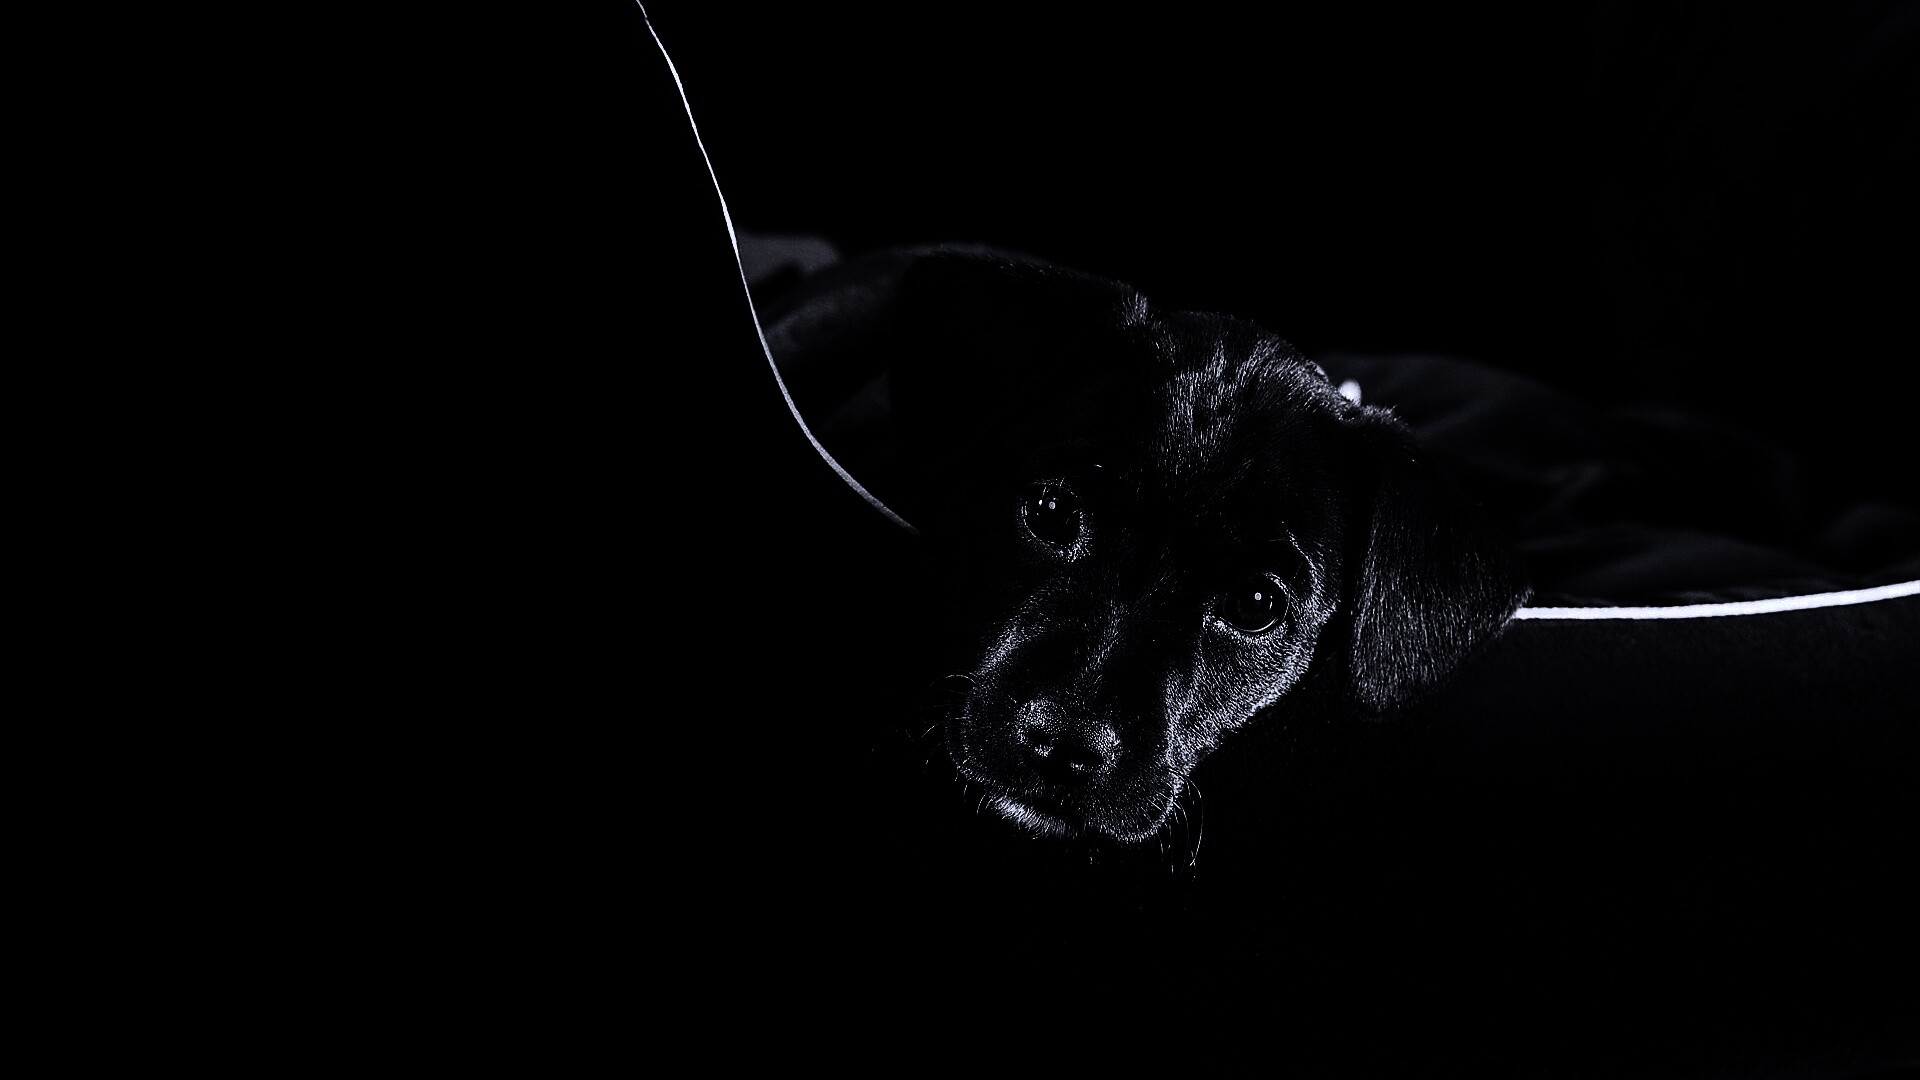 Собака на темном фоне